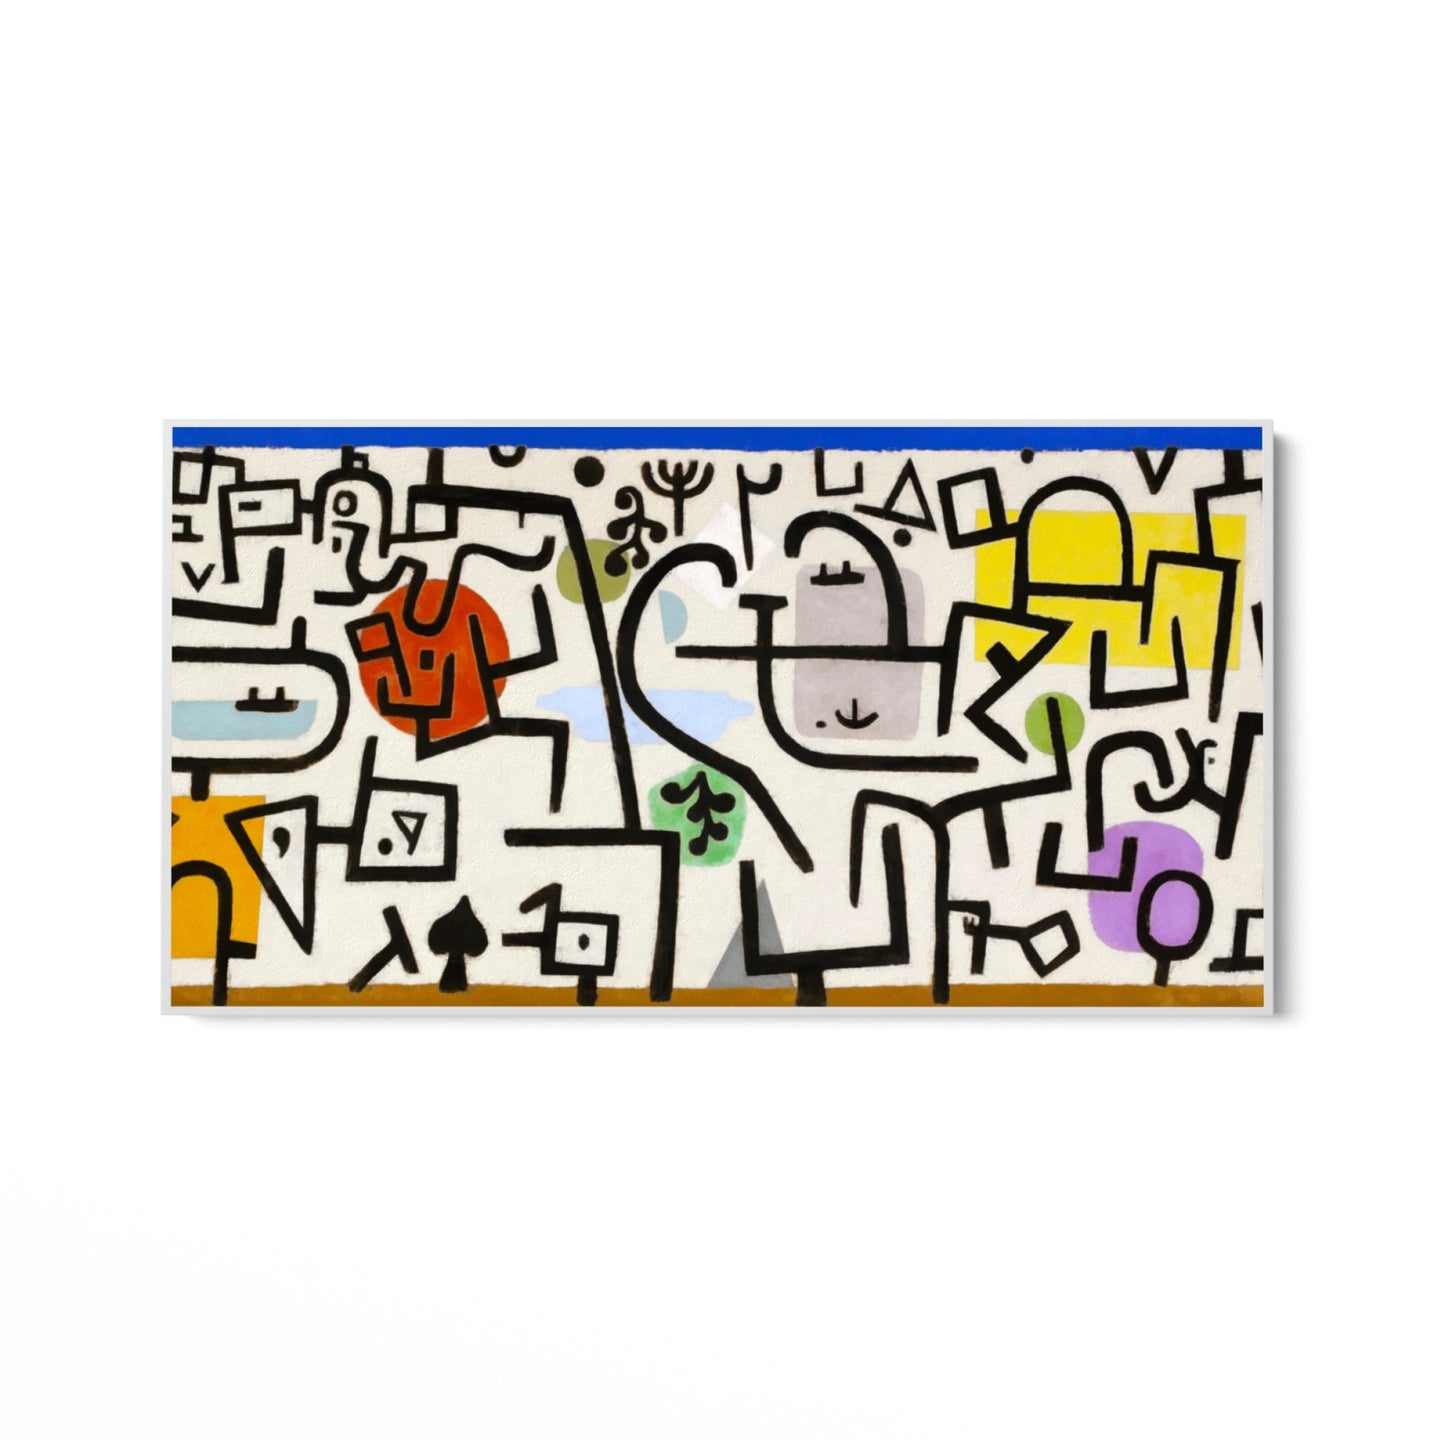 Paul Klee, Puerto Rico